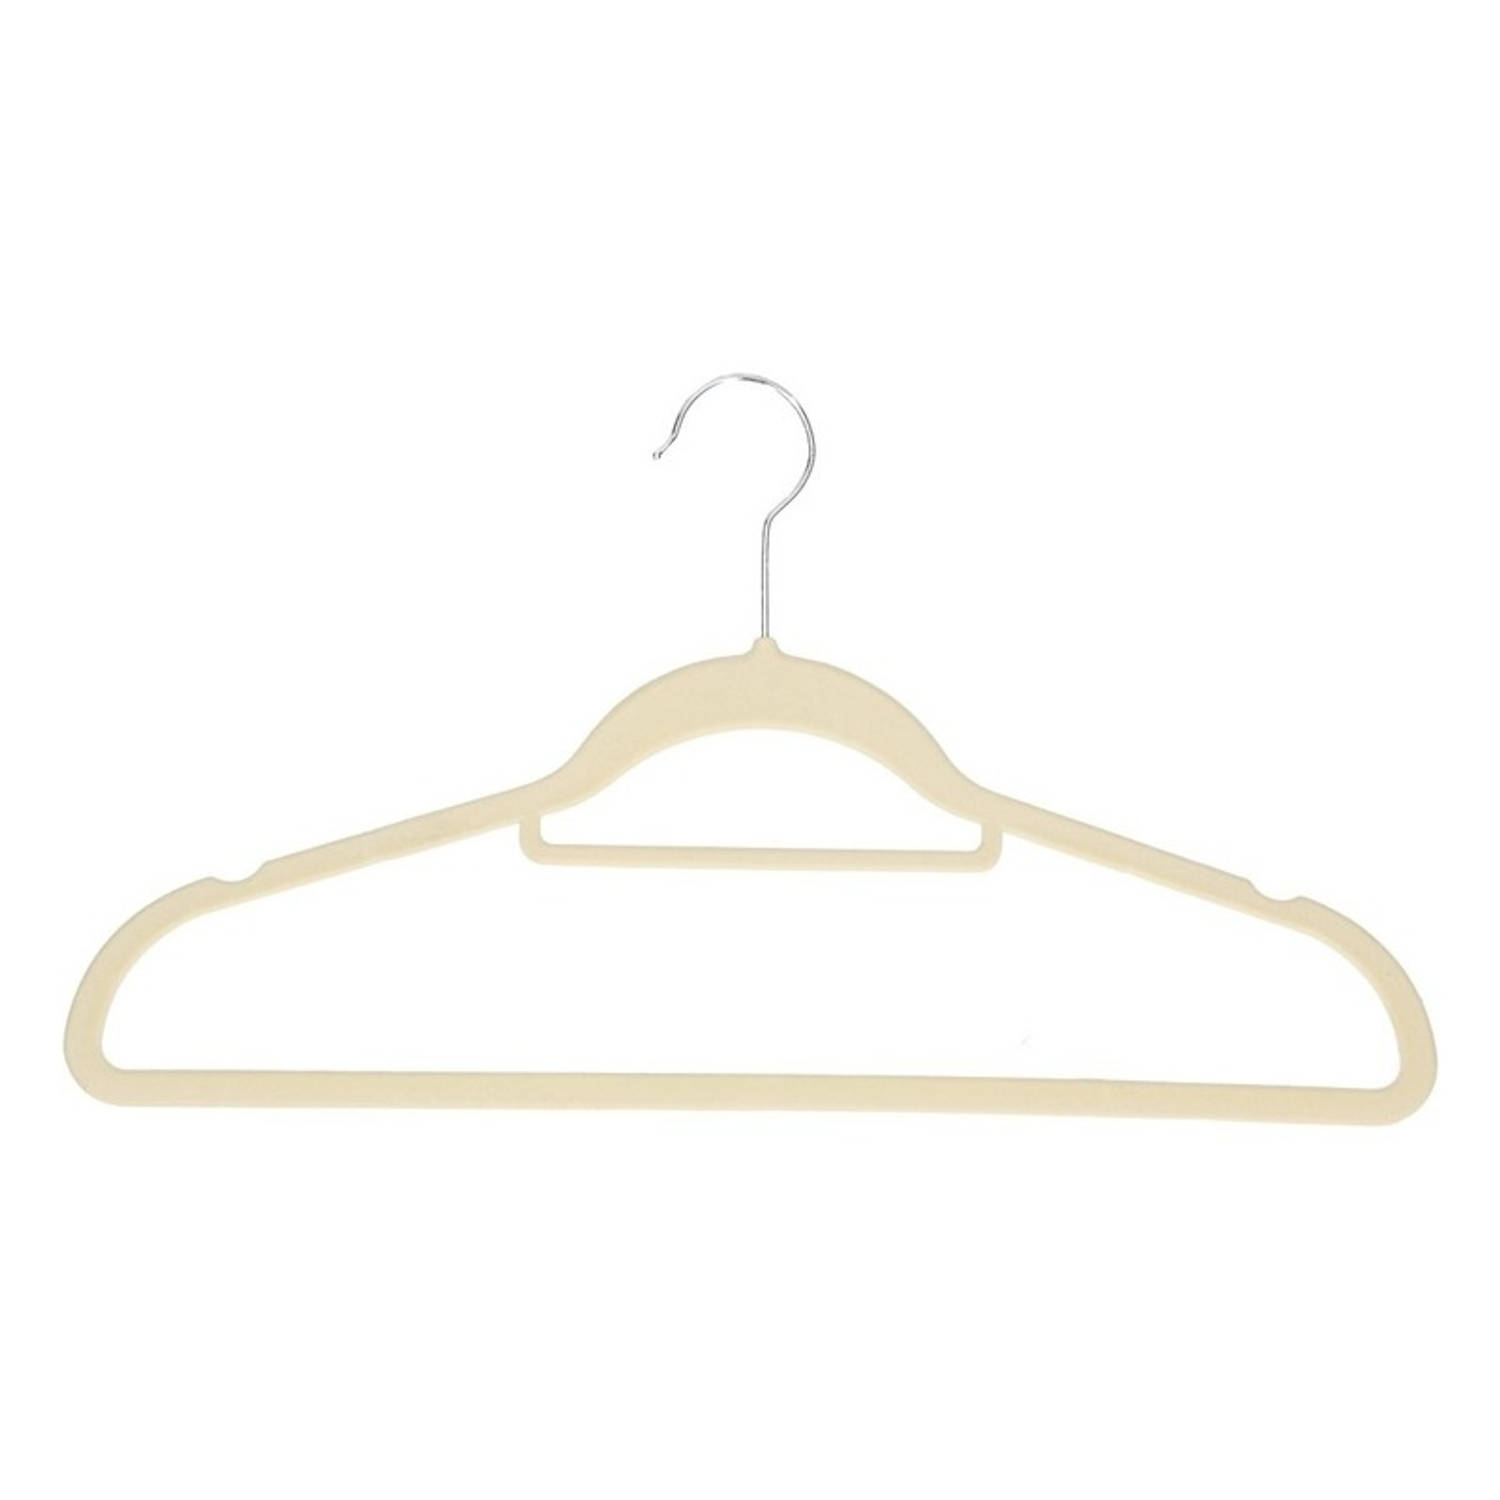 inhalen nevel overschot 20x Beige kledinghangers met stoffen coating - Kledinghangers | Blokker